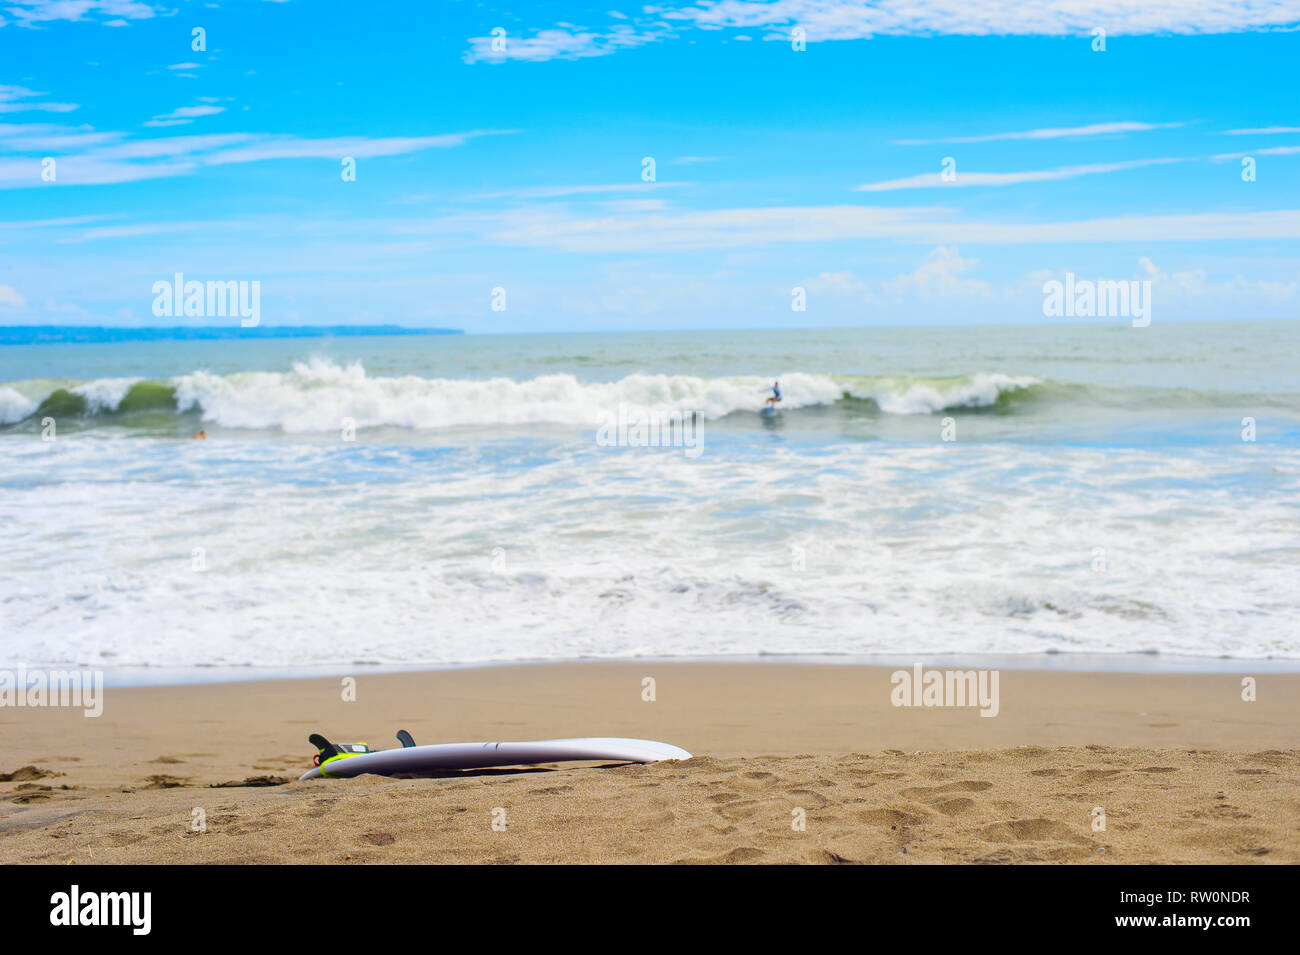 Las tablas de surf en la playa de arena, surfer cabalgando sobre las olas en el fondo, Bali, Indonesia Foto de stock